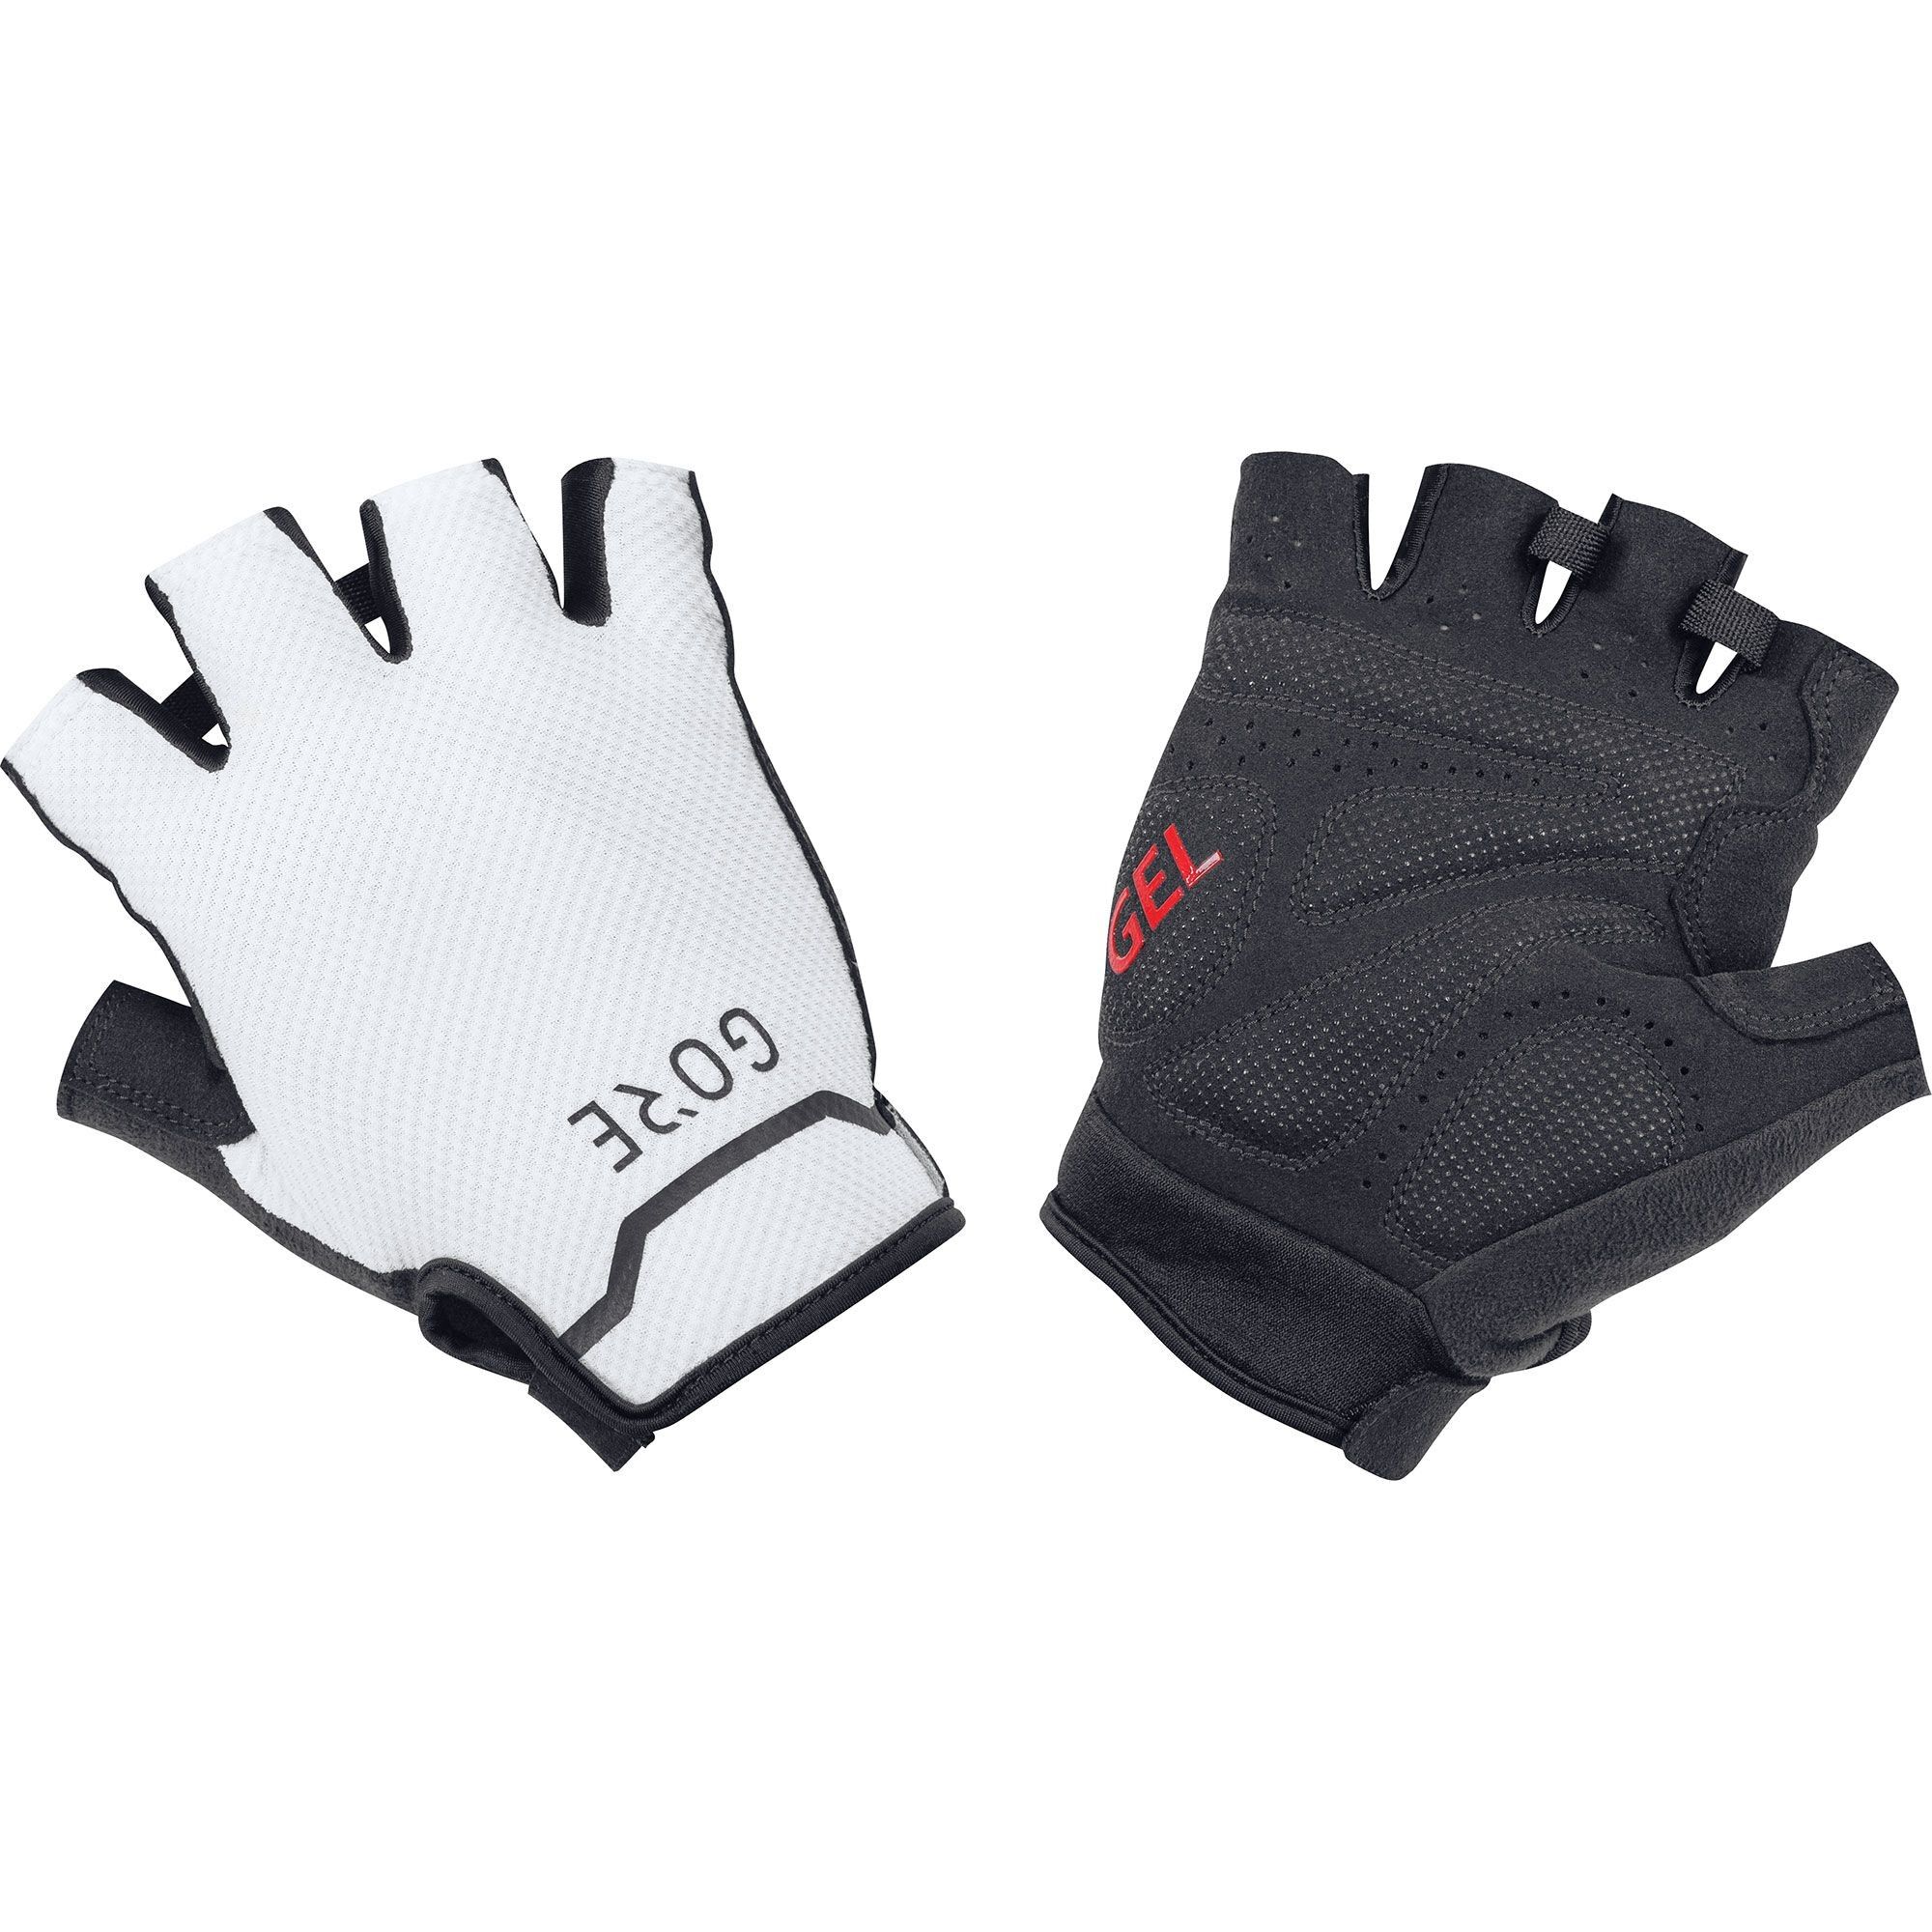 Gore Wear C5 Short Gloves - Short finger gloves